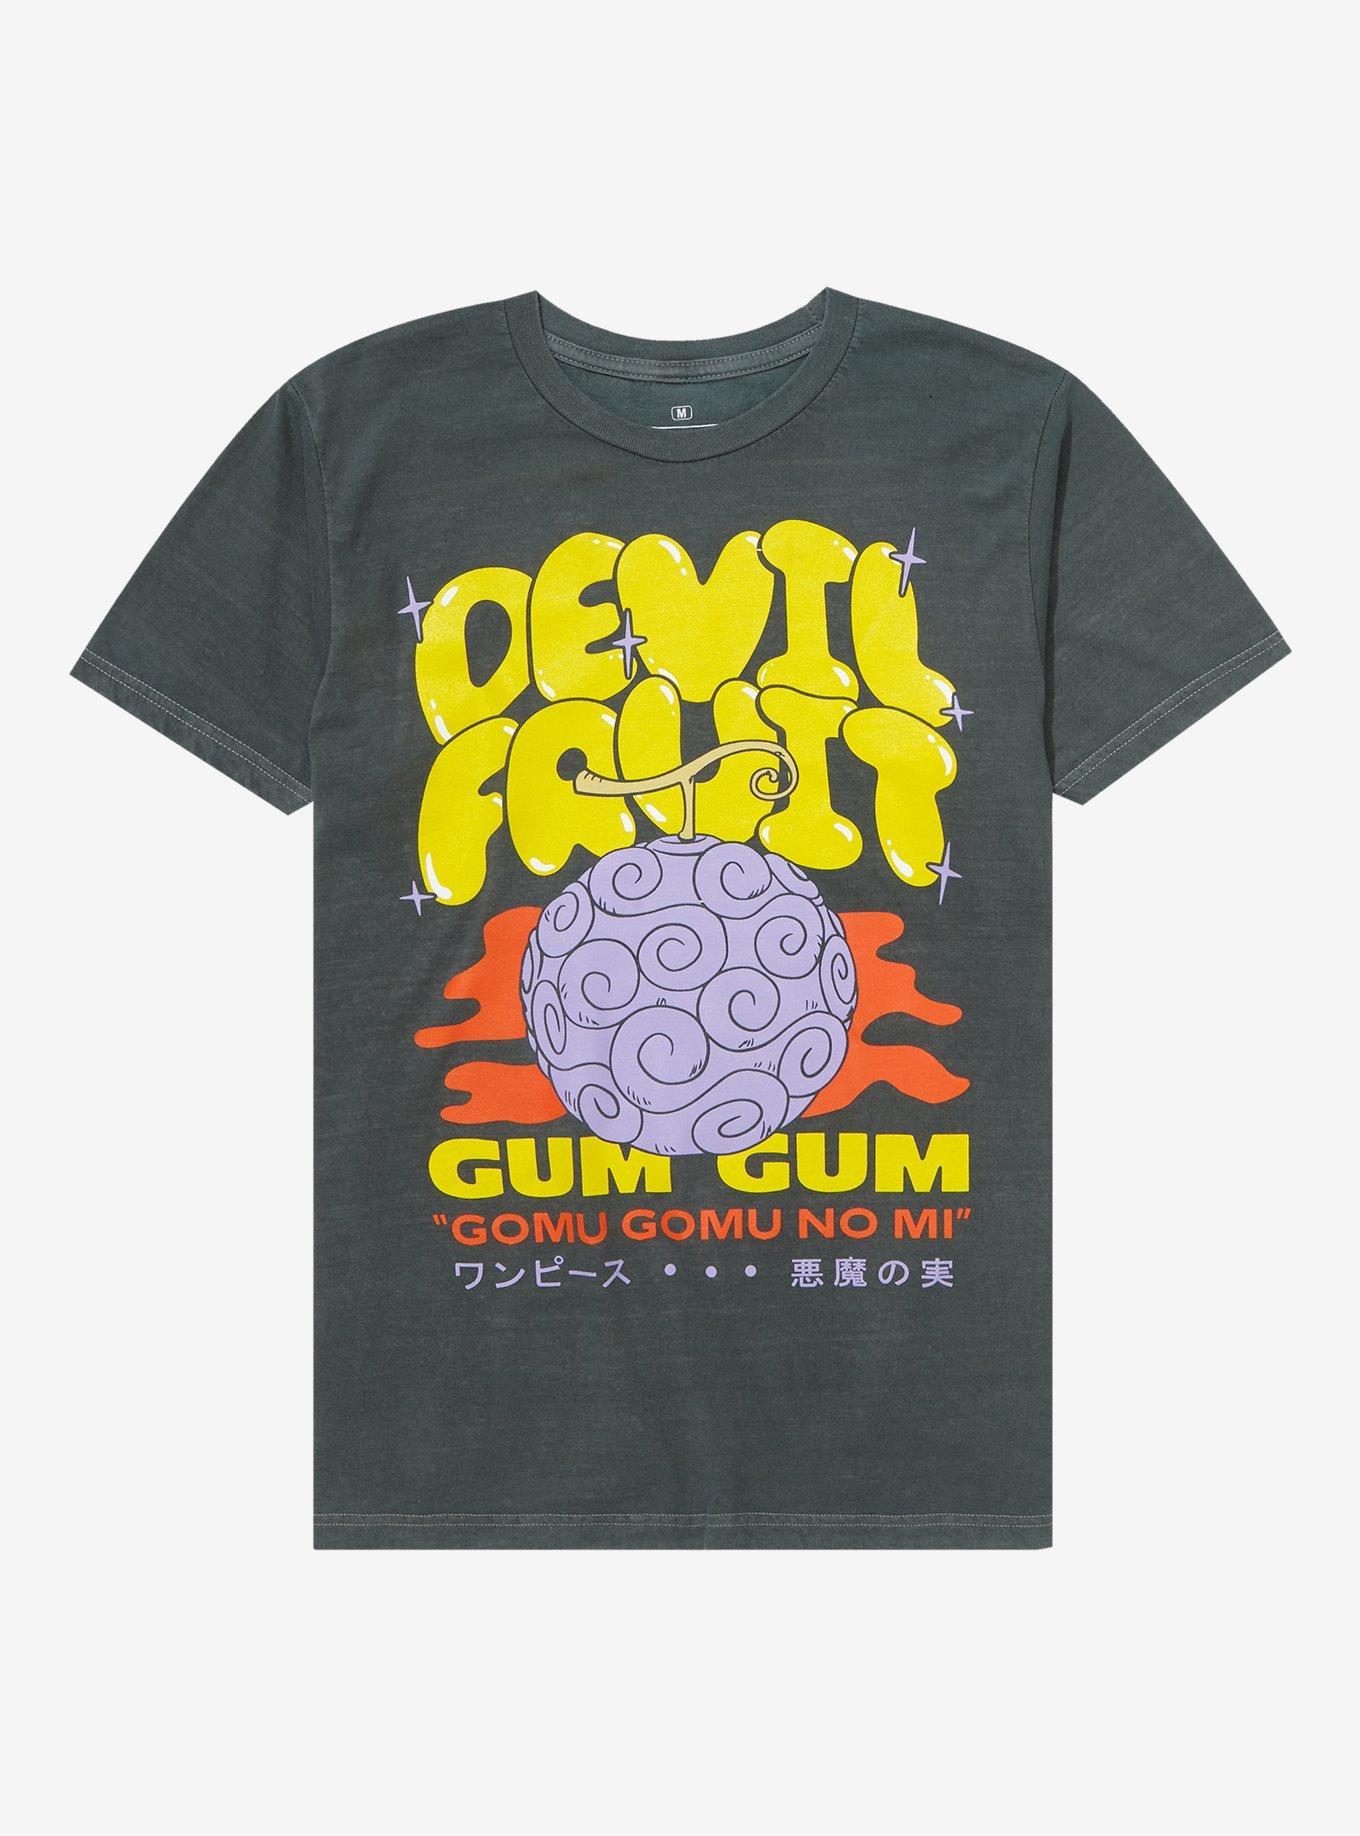 One Piece Gum-Gum Fruit Mug With Lid